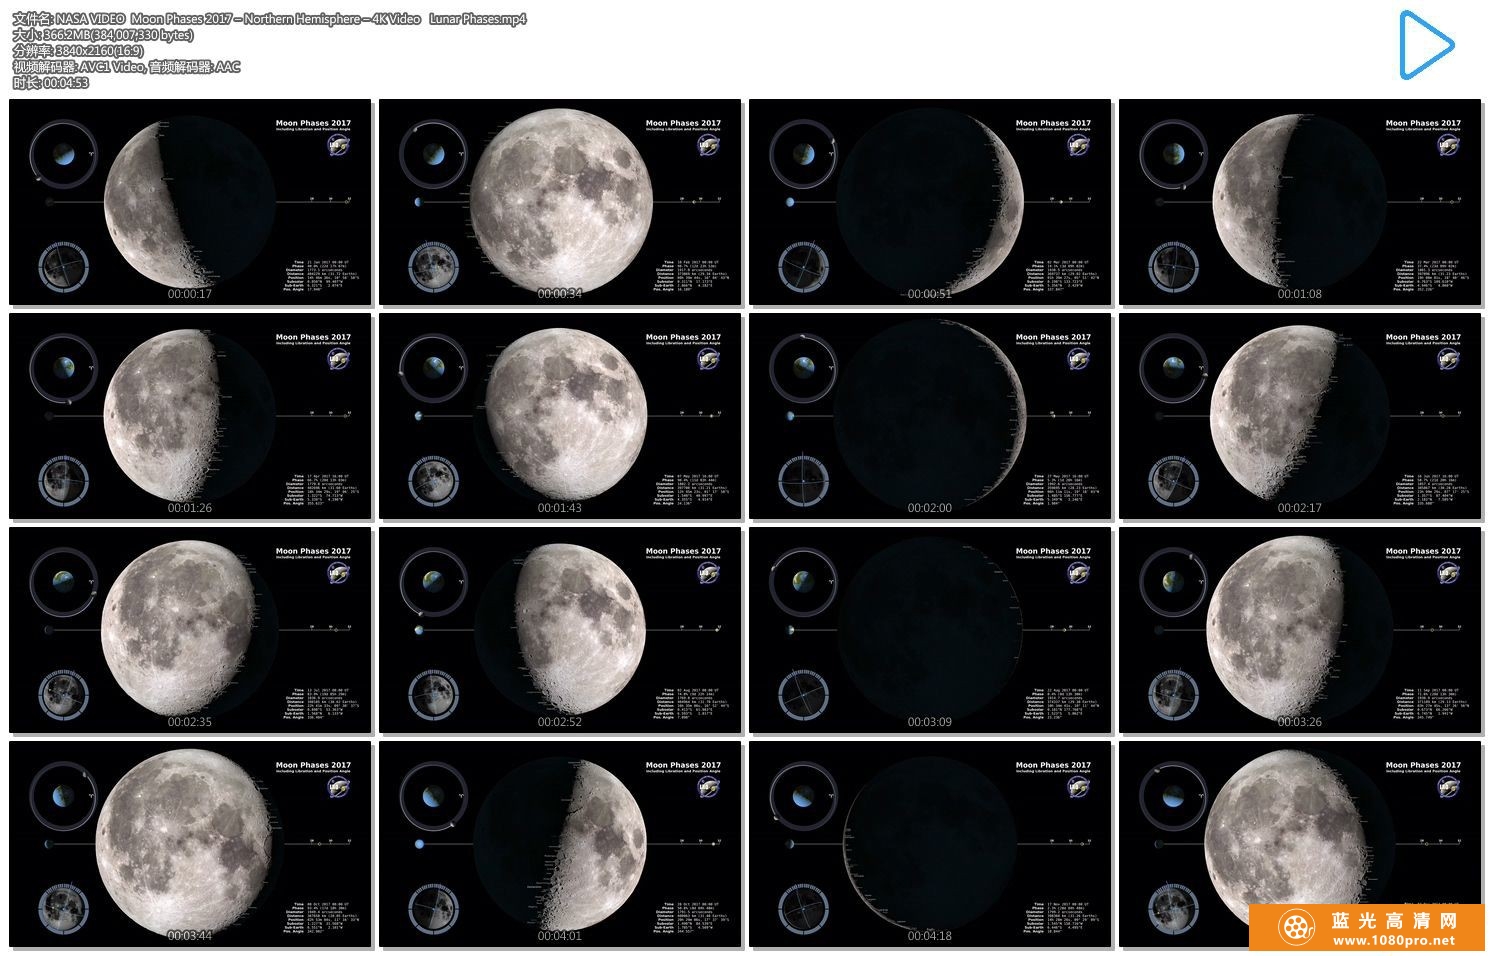 不可多得的资源 美国航天局NASA VIDEO| Moon Phases 2017【366GB/百度云】